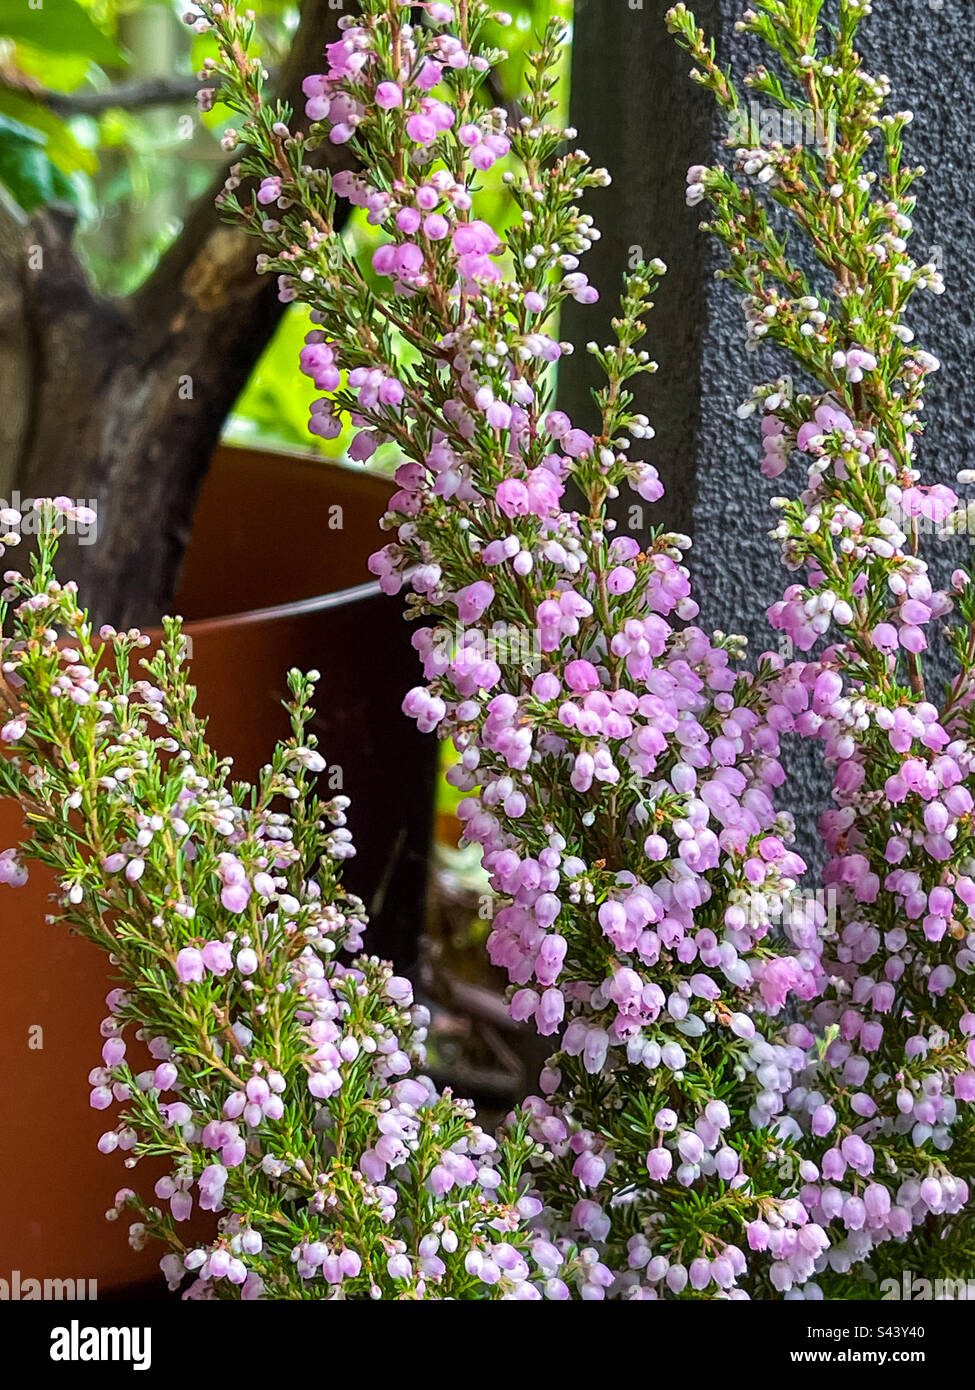 Nahaufnahme der rosafarbenen, glockenartigen Blüten von Heath, auch bekannt als Erica melanthera Ruby Shepherd, ein Strauch, der im Herbst und Winter an schwarzen Wänden und Topfpflanzen blüht. Wintergartenfarbe. Stockfoto